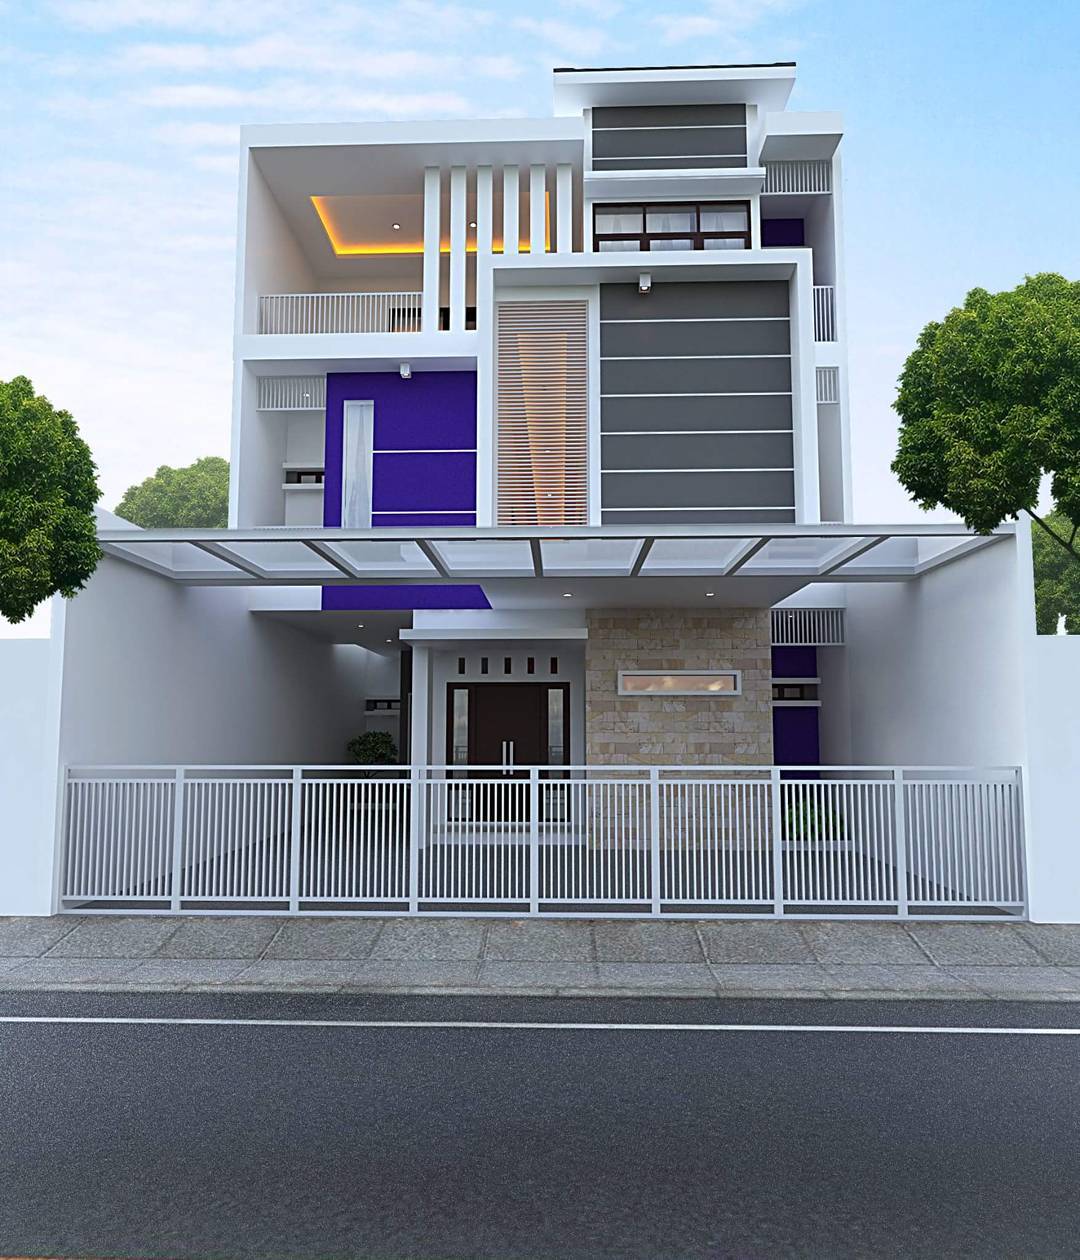 desain rumah minimalis cantik - Desain Rumah Tingkat Minimalis Cantik ...